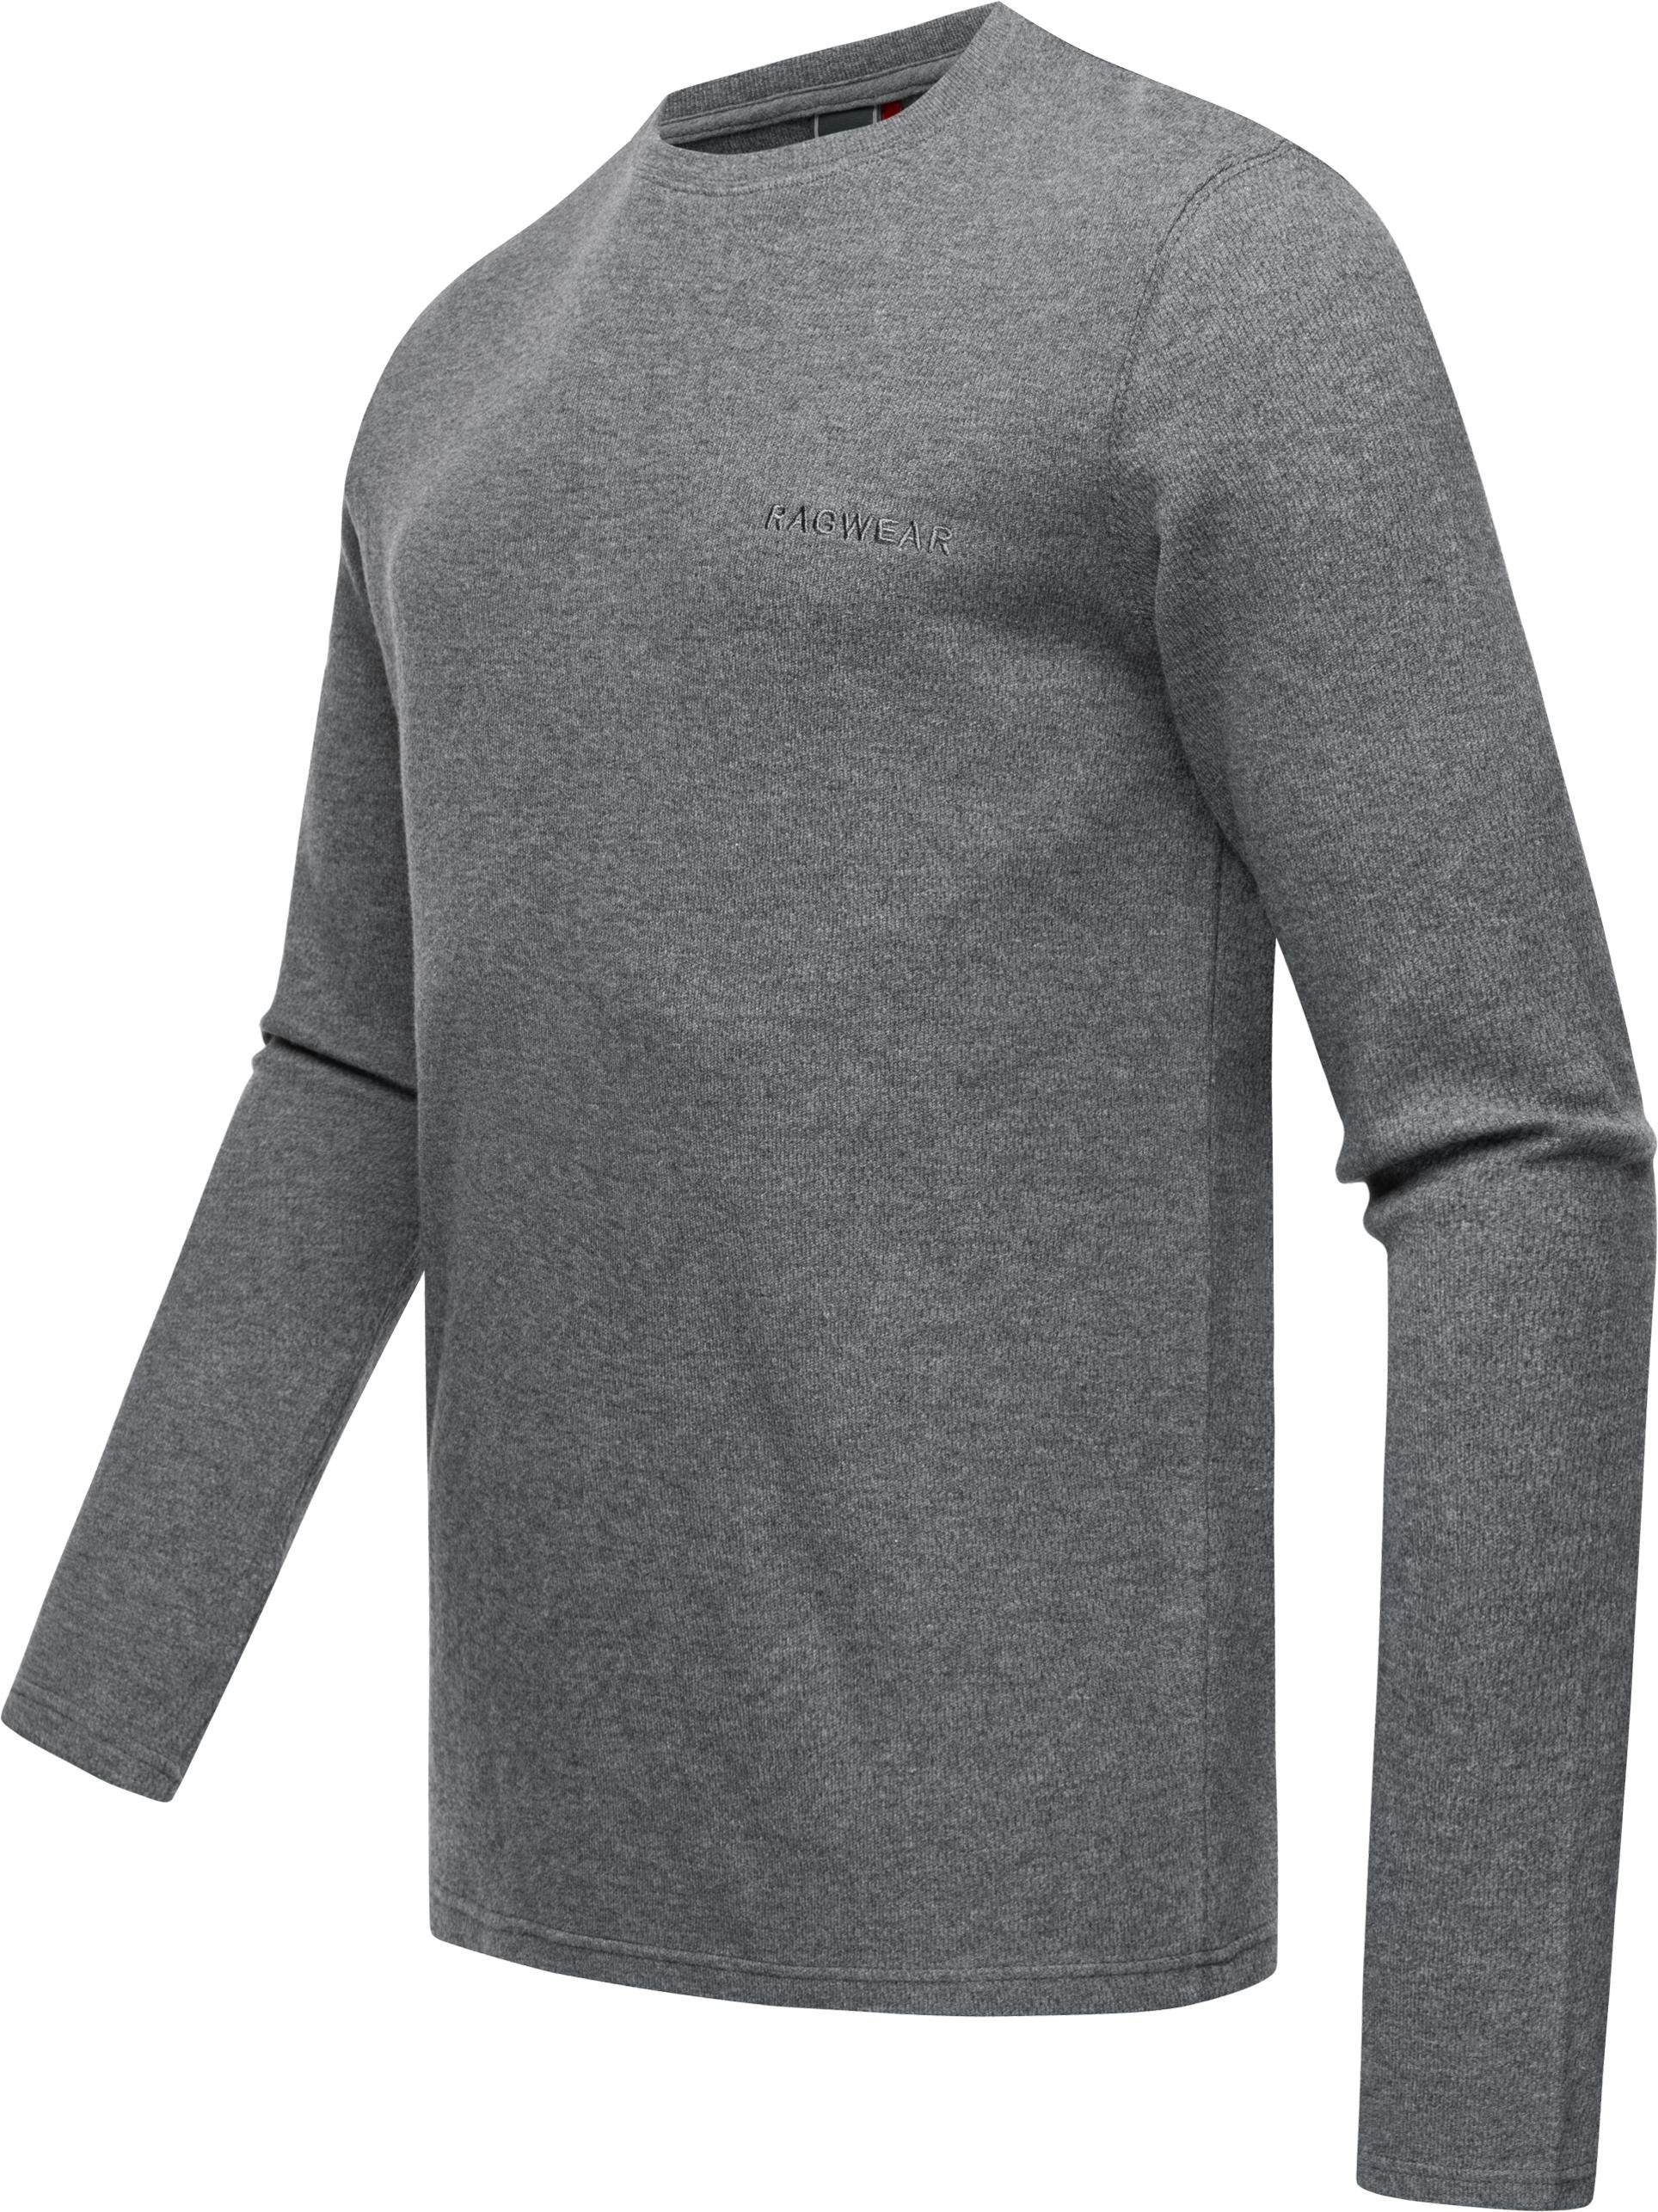 Ragwear Sweatshirt an an leichte Der Stylischer Cyen sich Pullover, Sweater wunderbar den Körper Herren leichter schmiegt